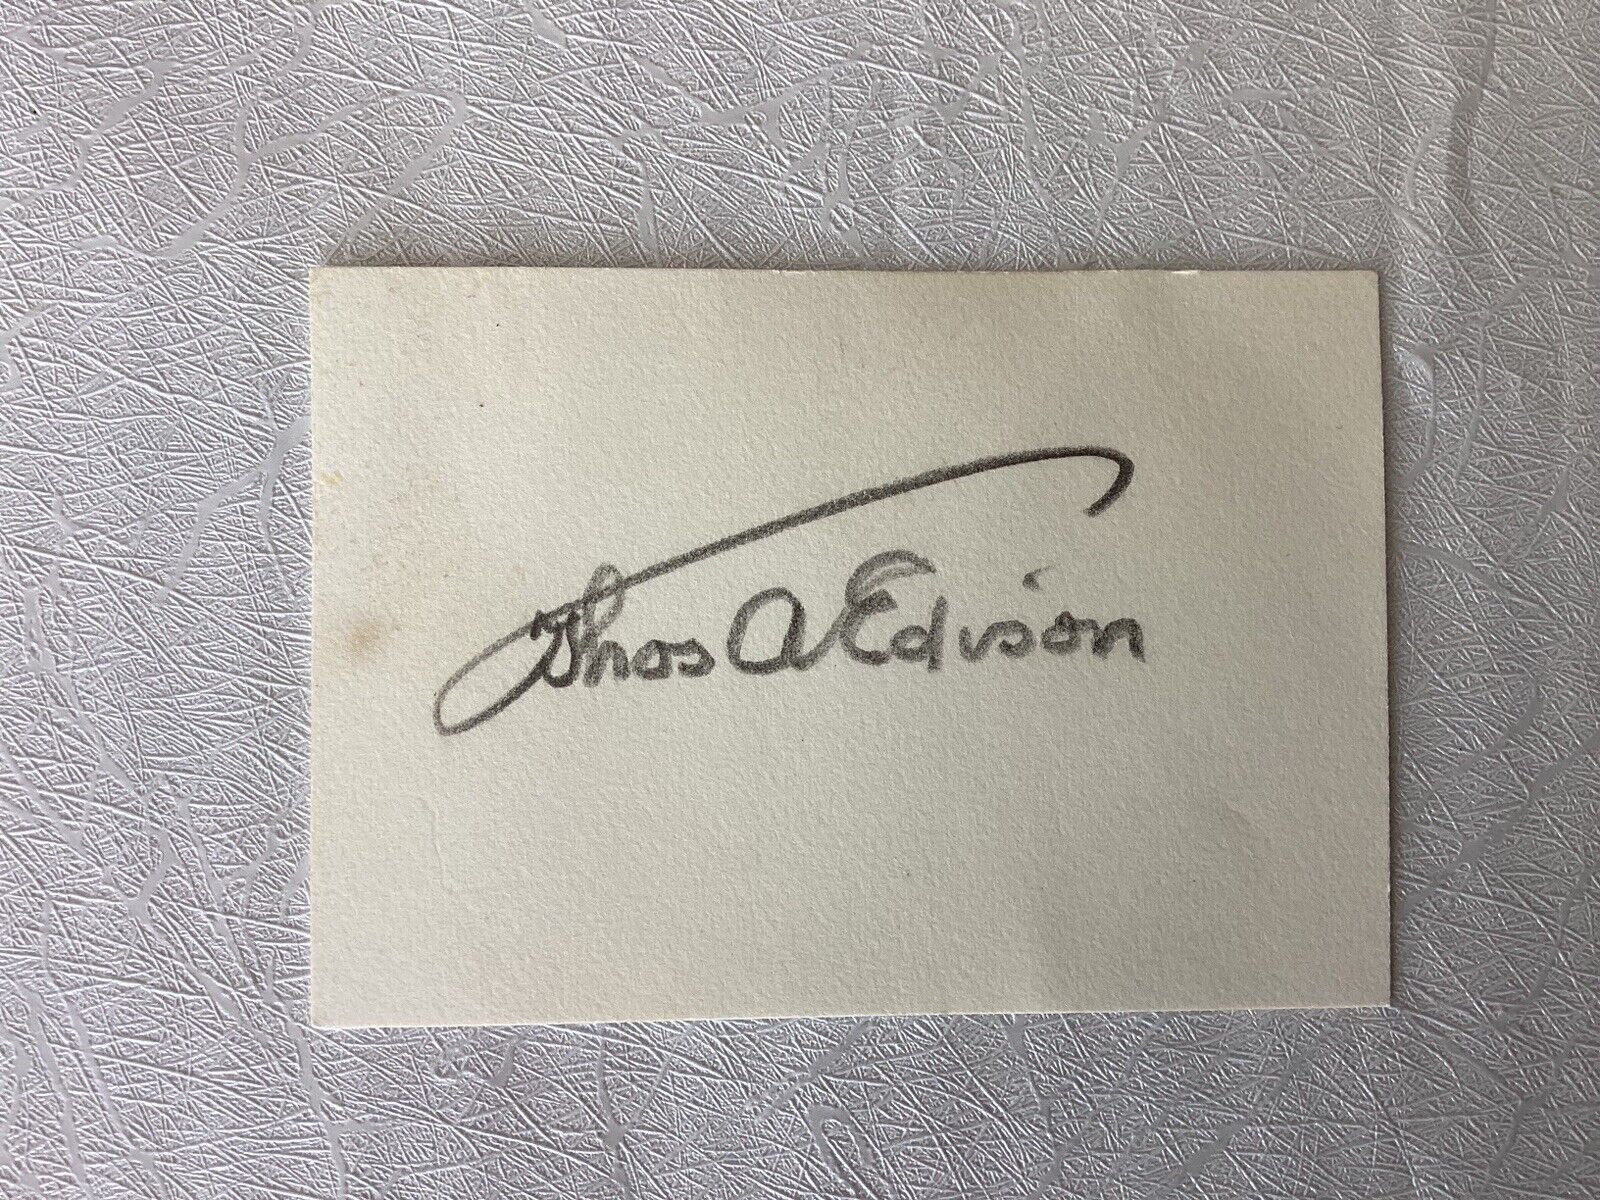 Thomas A Edison Late “Thos” Ink Signature Iconic Umbrella Autograph Cut